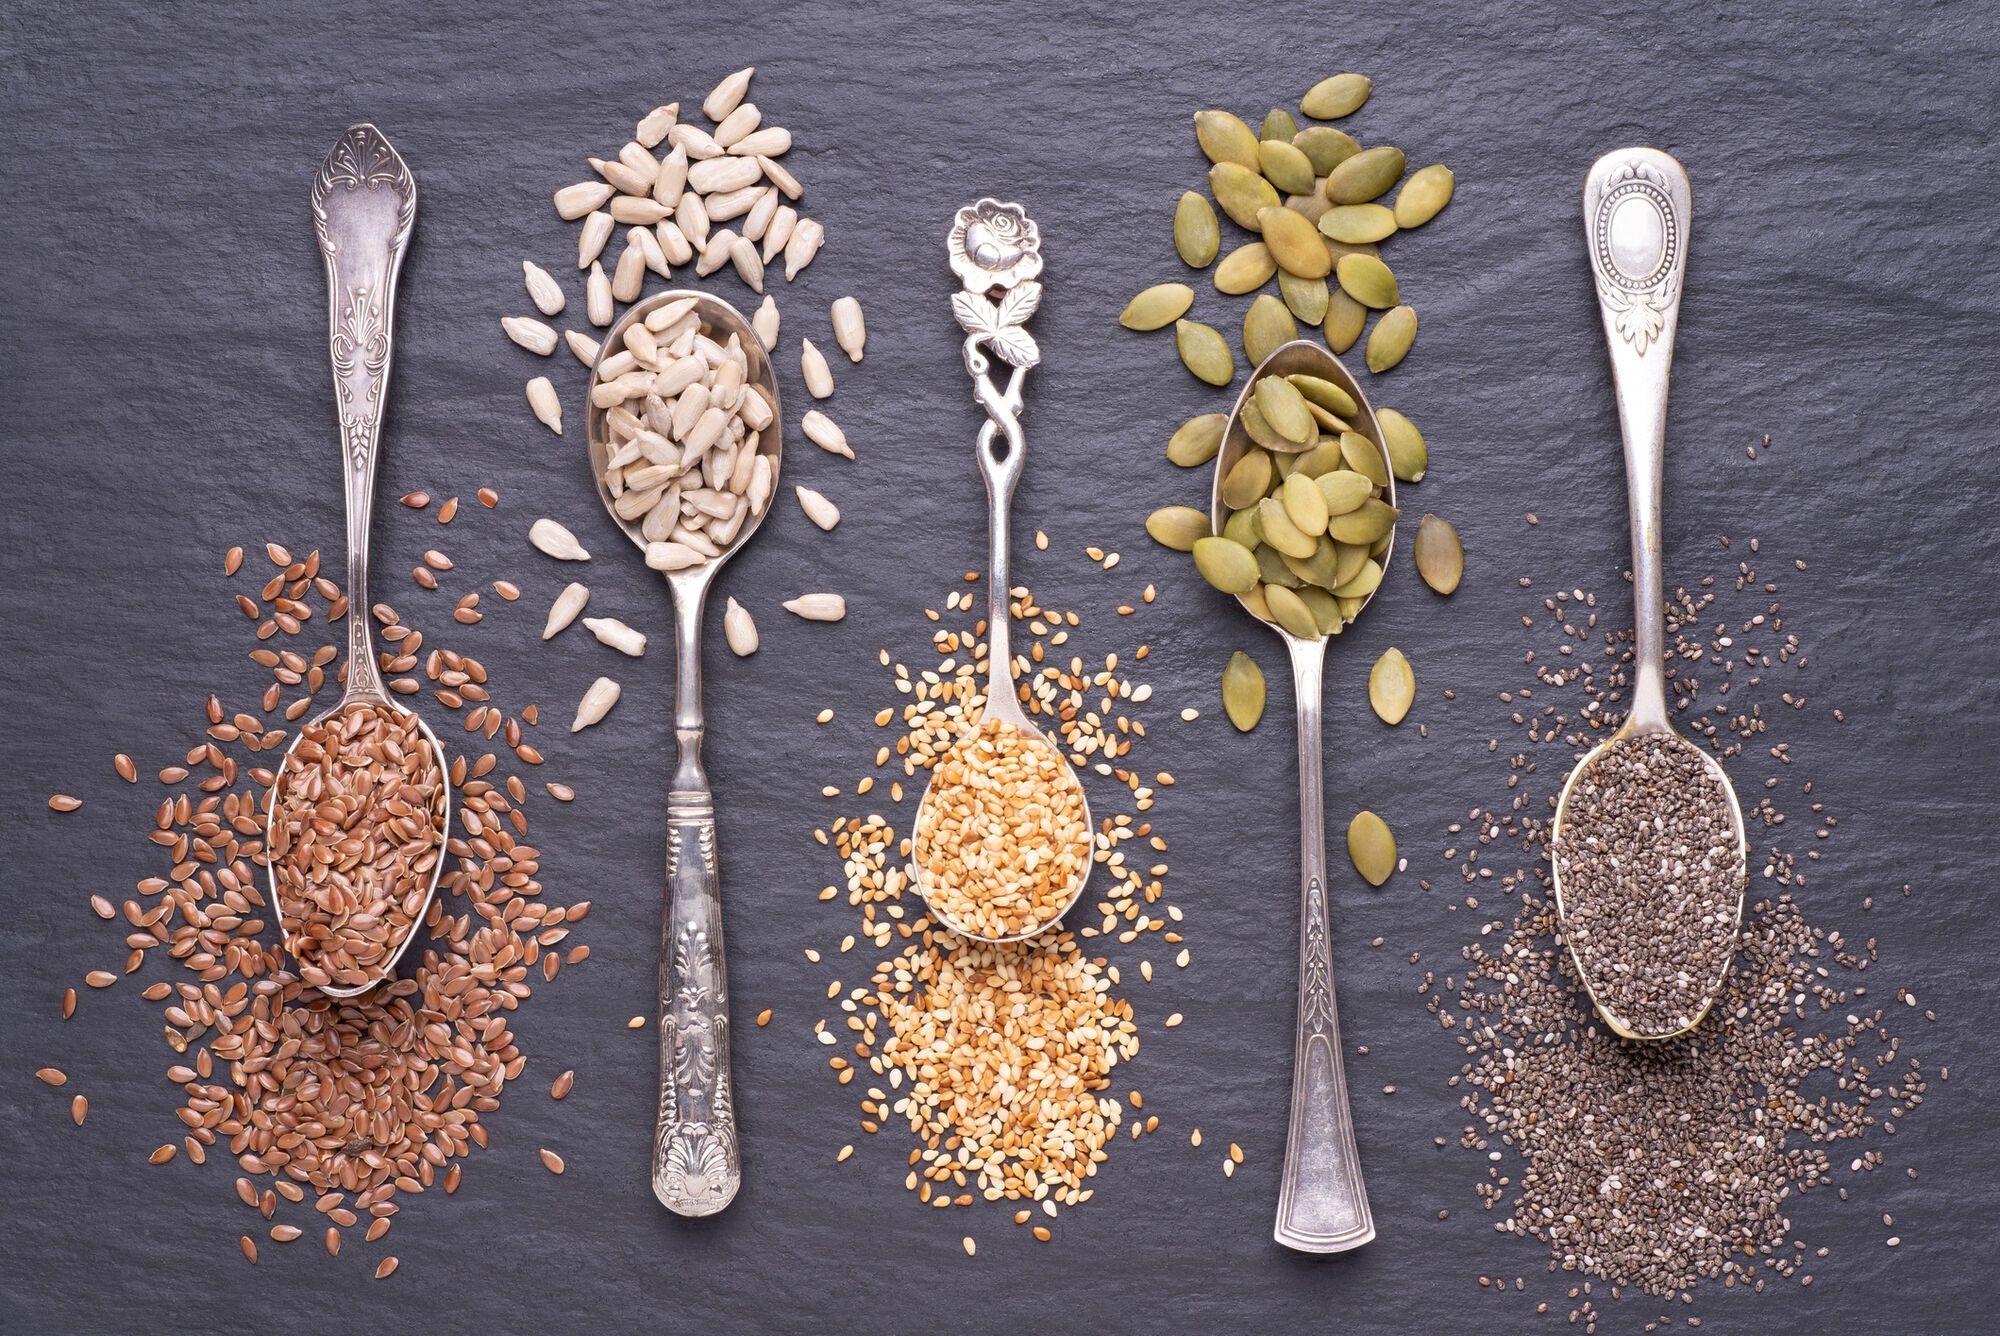 Wymieniono 7 rodzajów nasion poprawiających pracę jelit